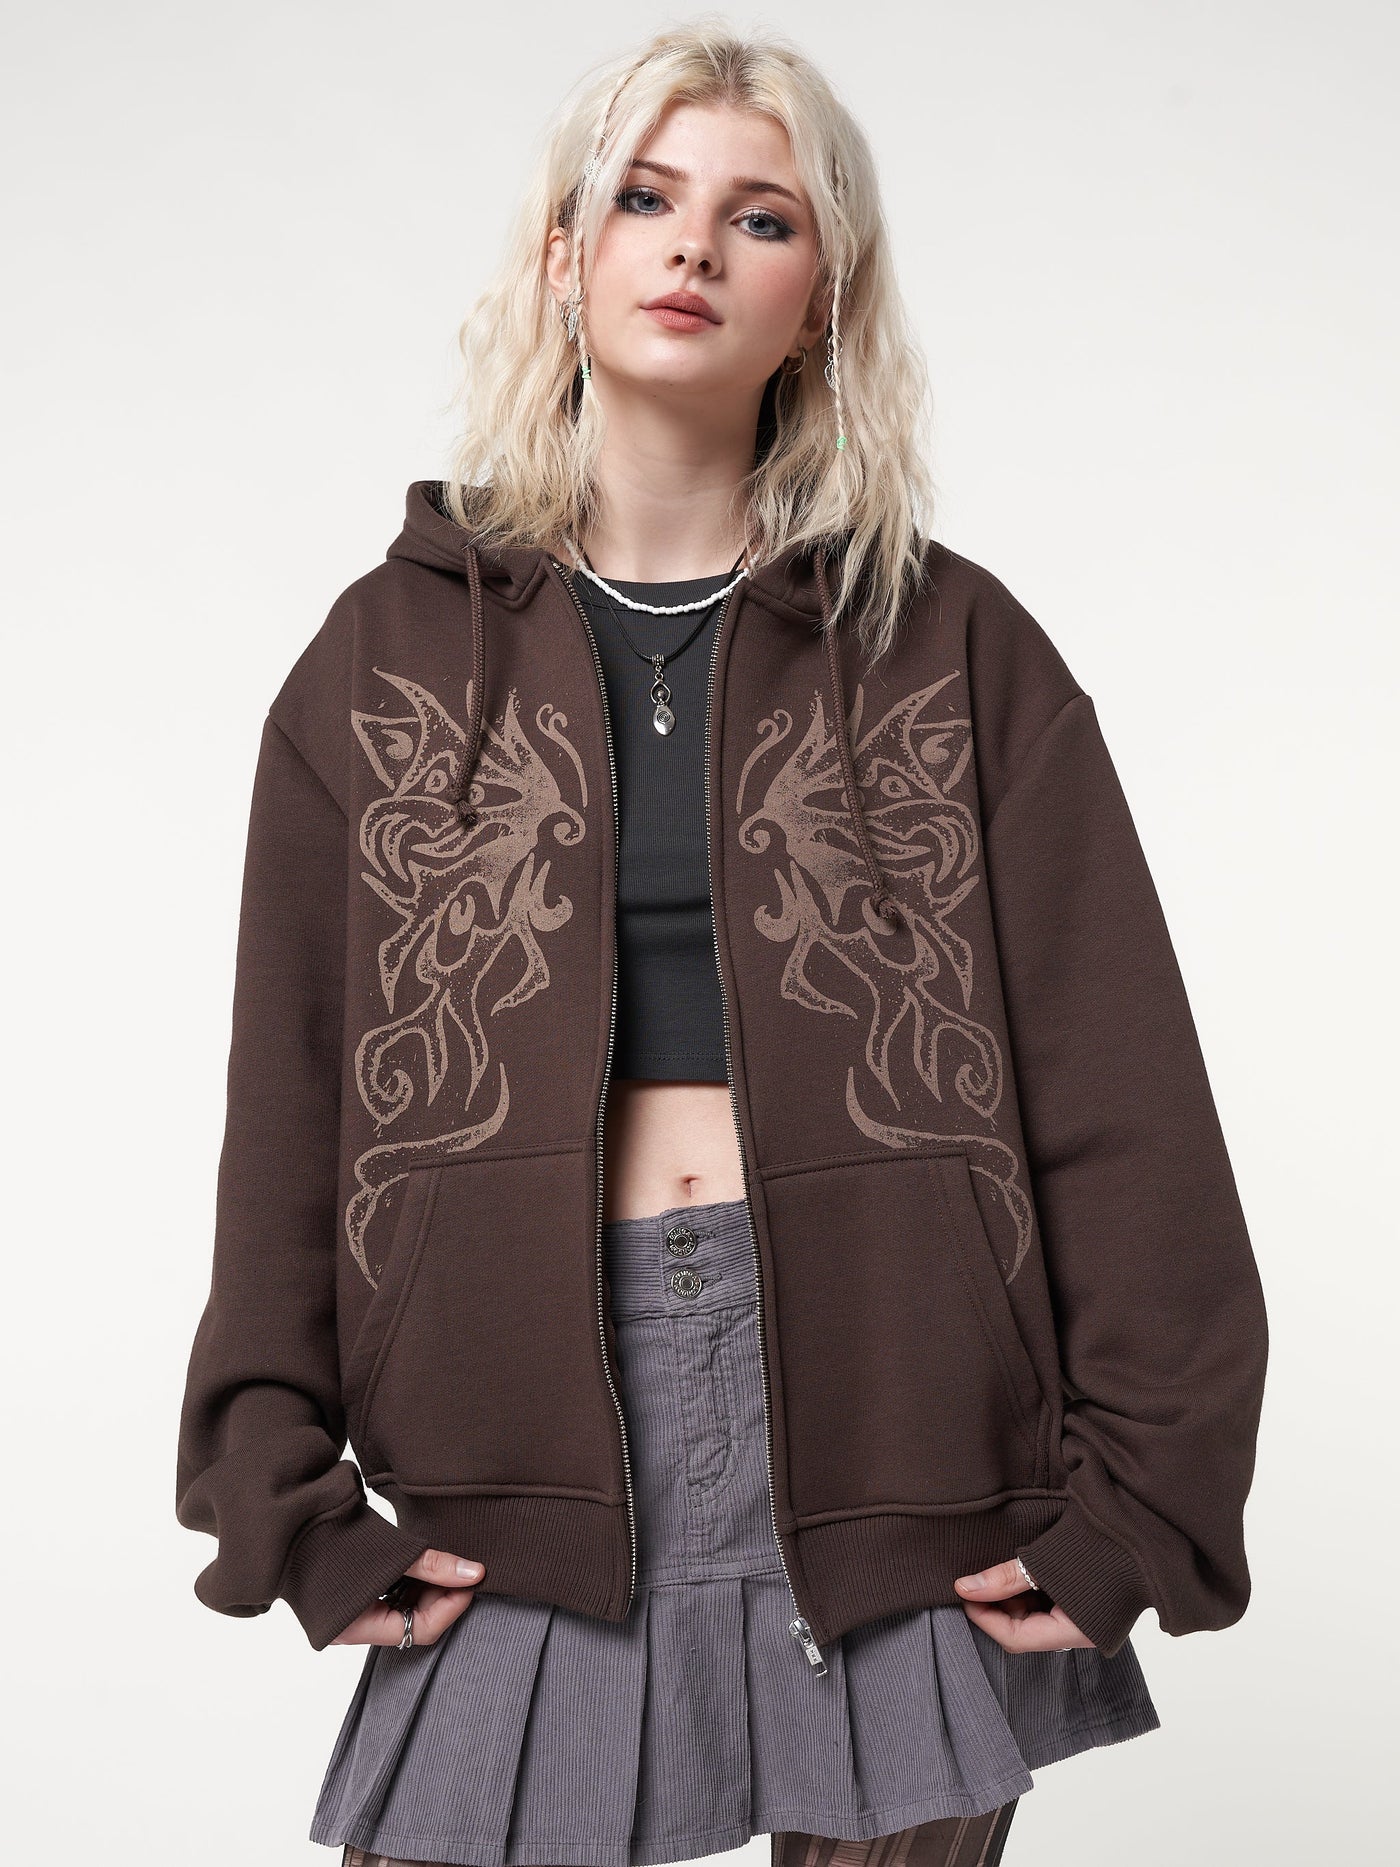 Zip up hoodie jacket in dark brown with fairy wings front print